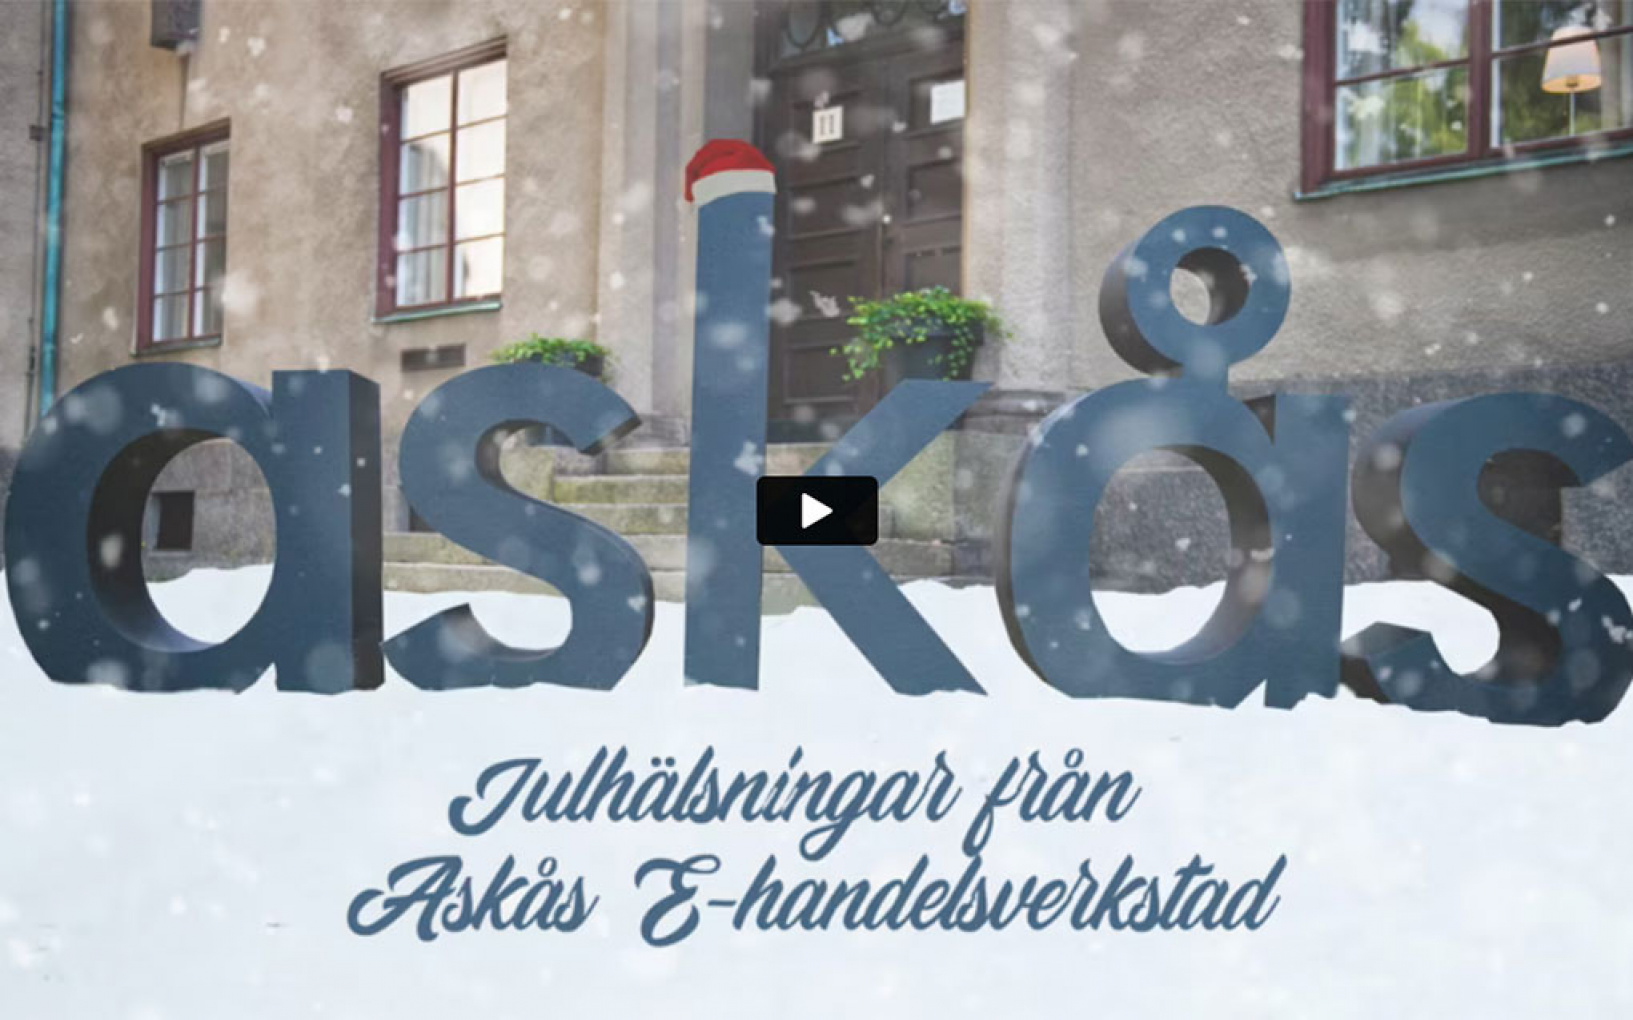 God Jul & Gott Nytt År önskar hela Askås